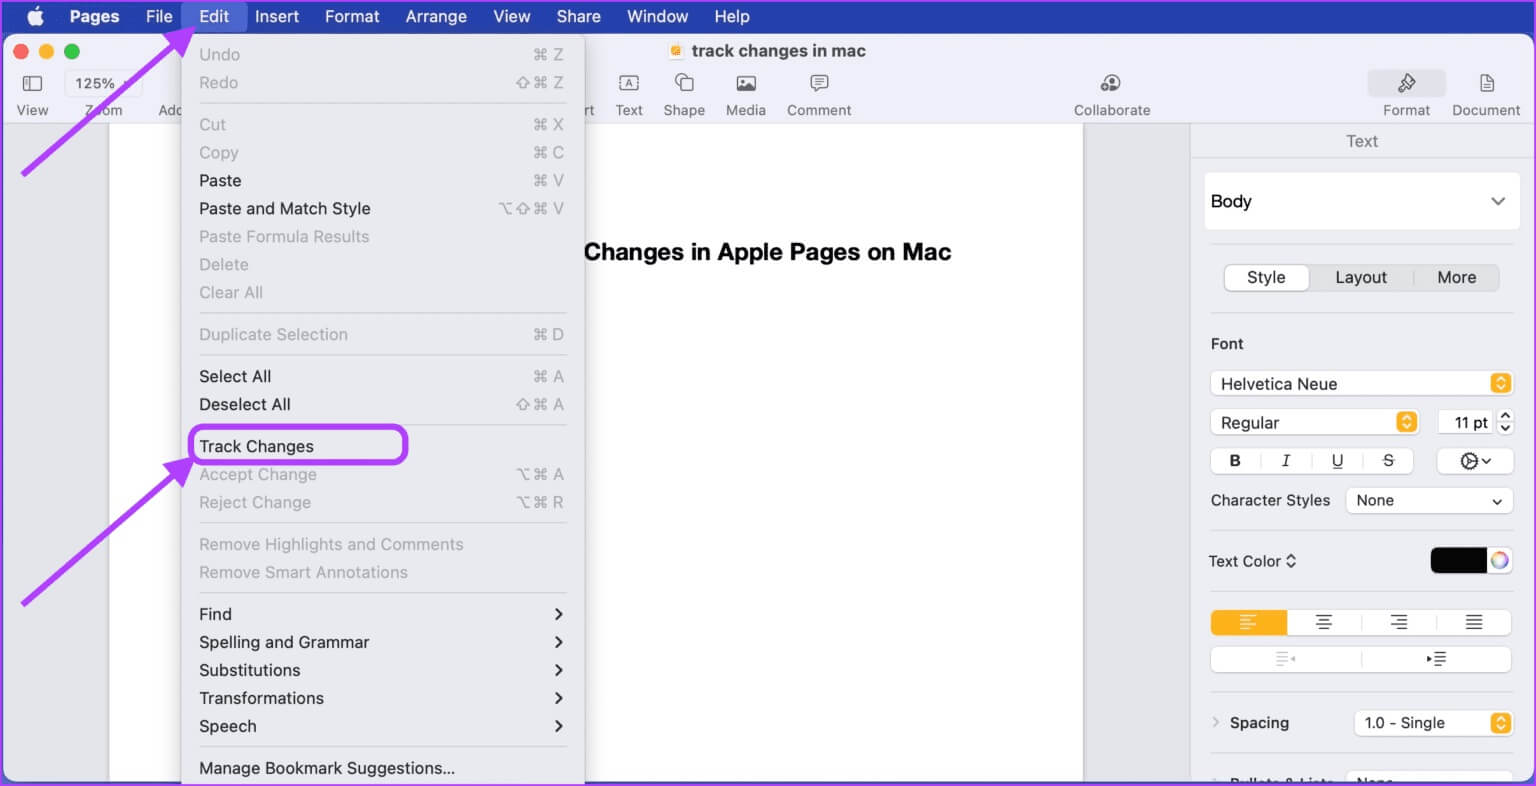 دليل نهائي لاستخدام تعقب التغييرات في صفحات Apple على أجهزة Mac - %categories